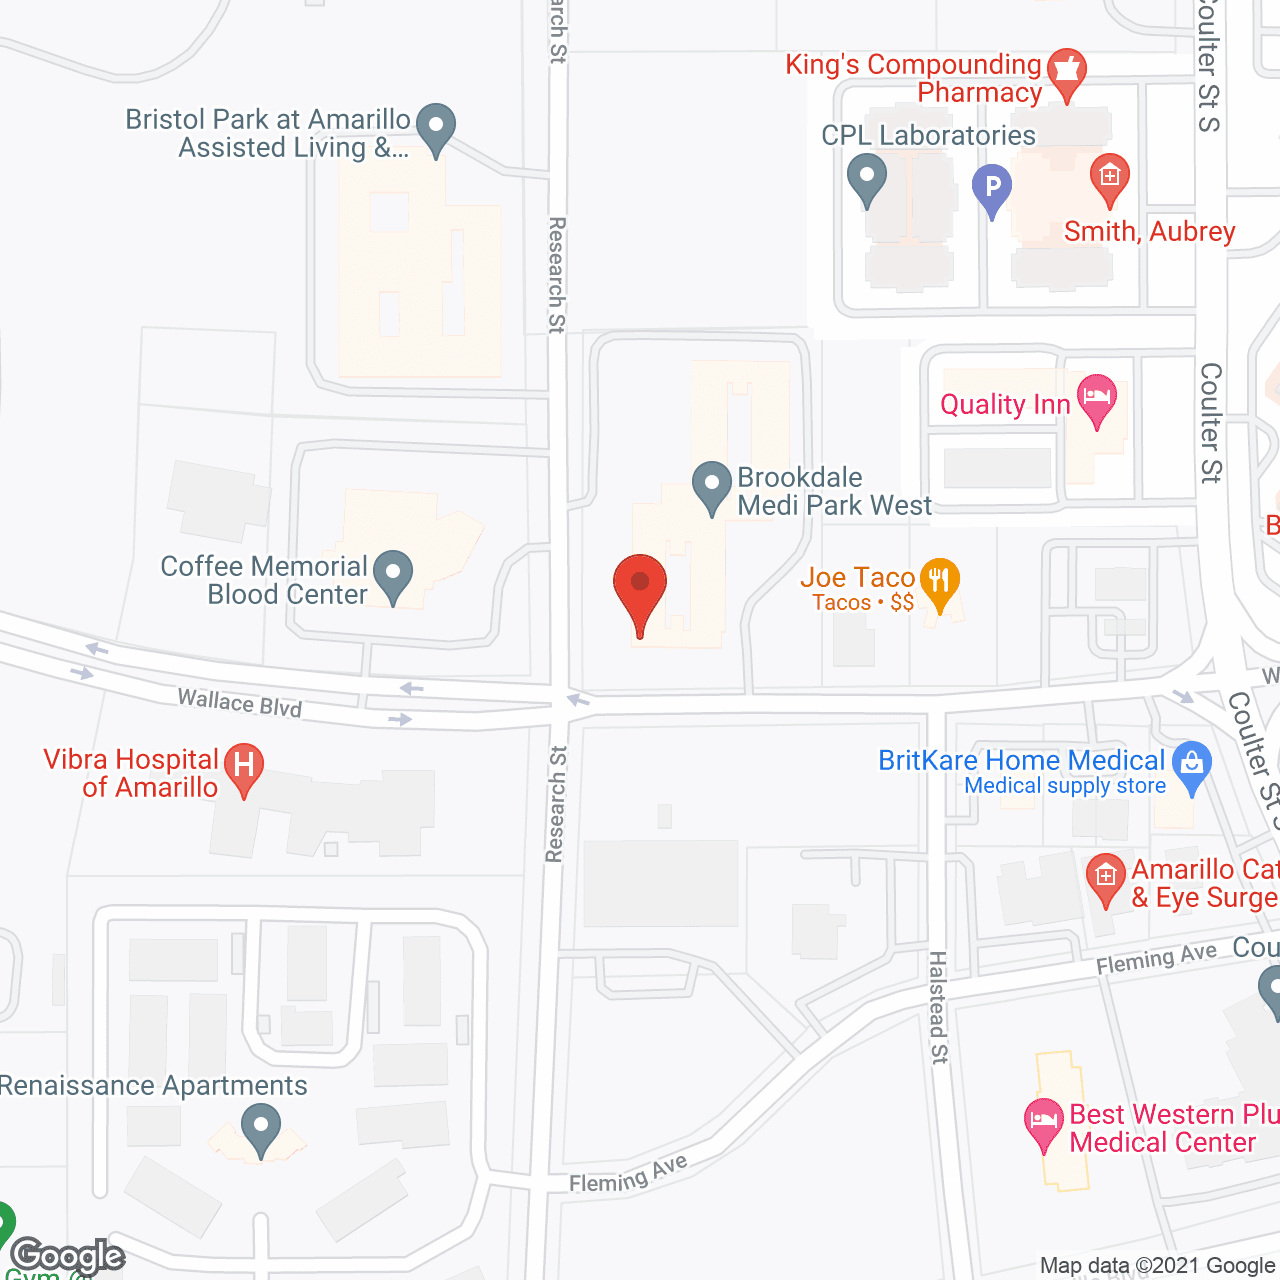 Brookdale Medi Park West in google map